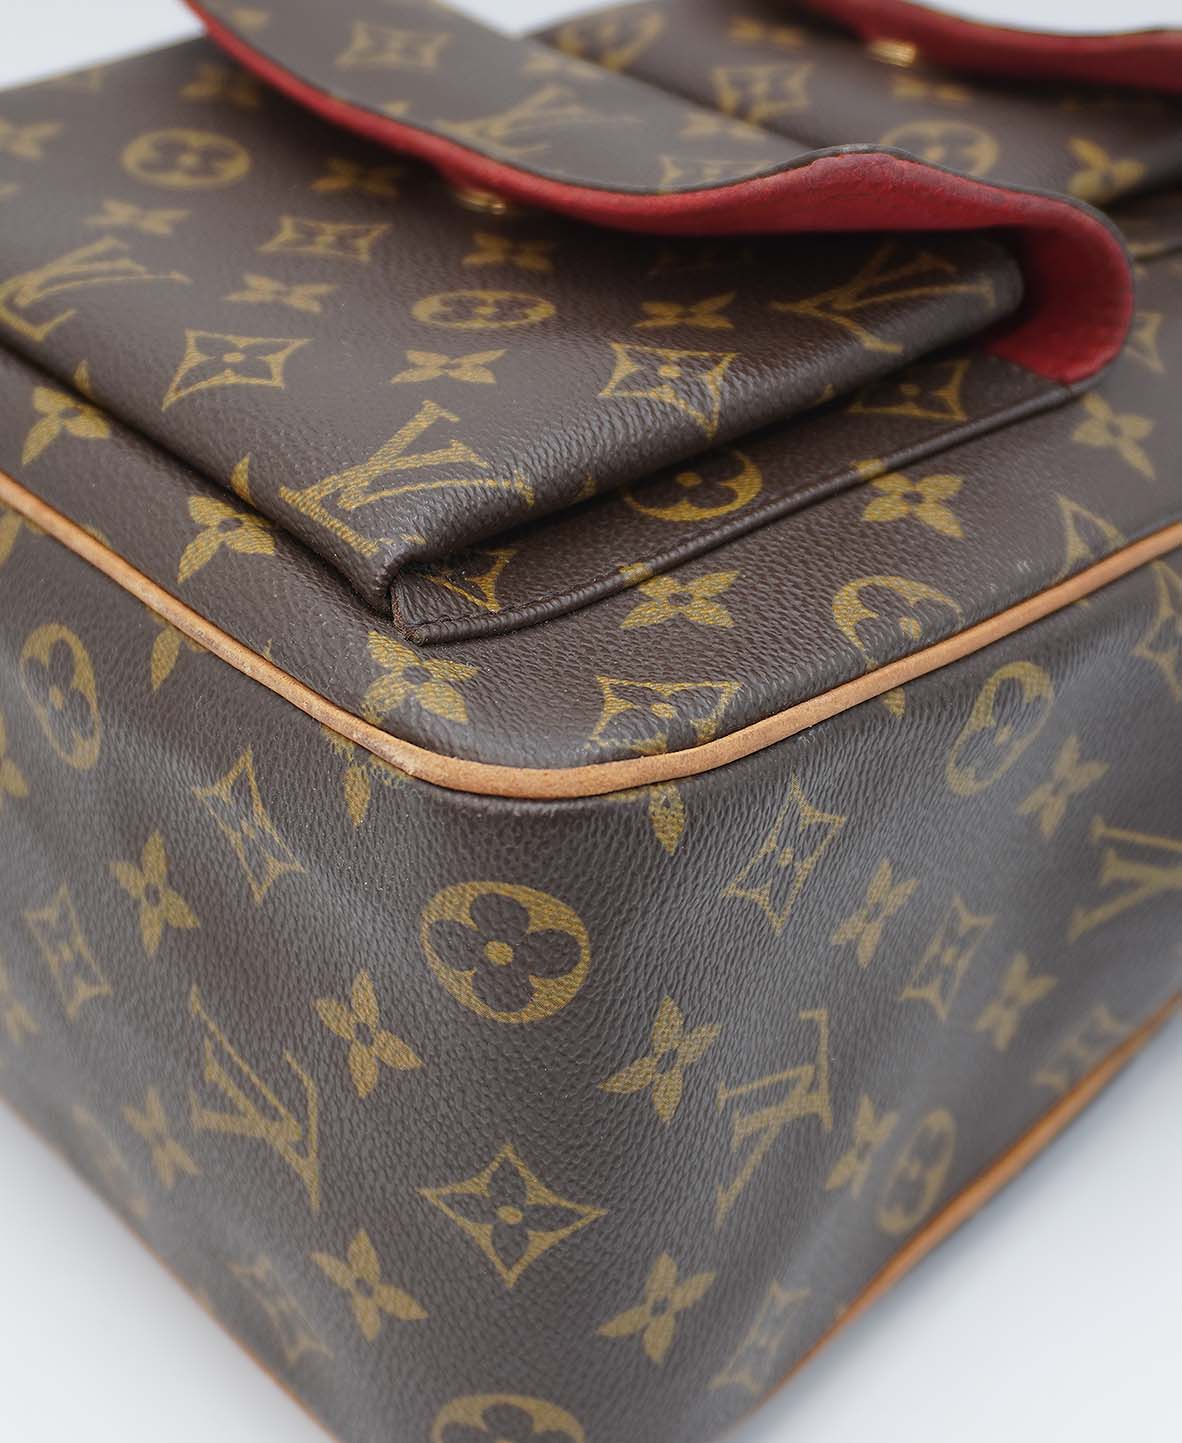 Louis Vuitton Monogram Excentri-Cité - Brown Handle Bags, Handbags